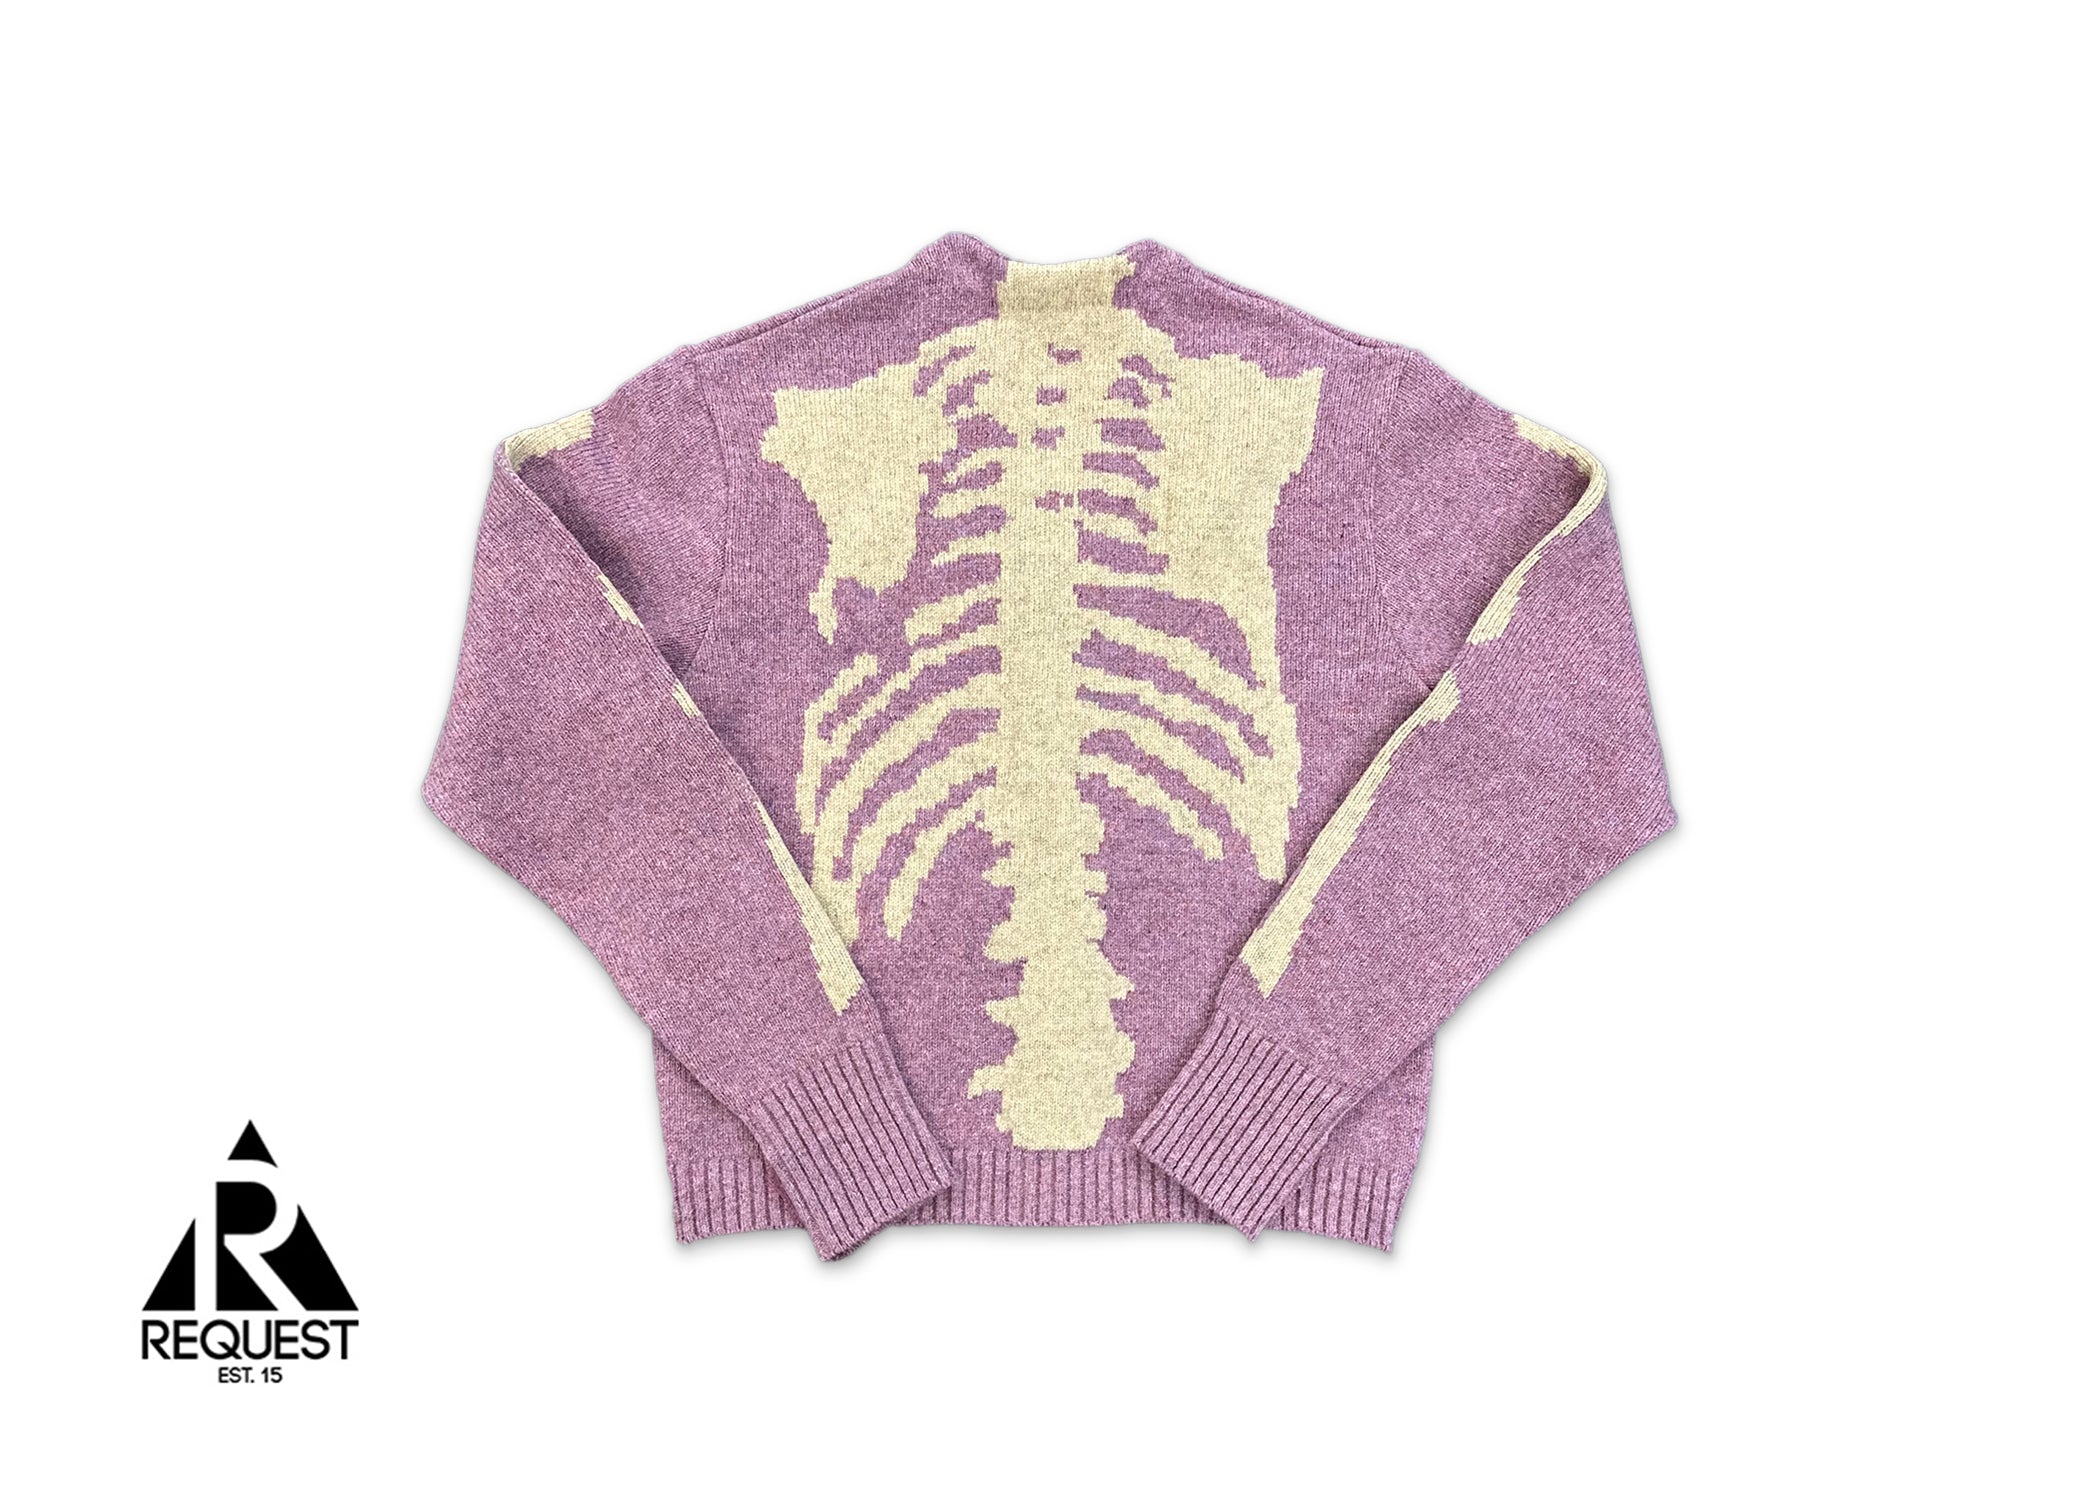 Kapital Skeleton Distressed Jacquard Knit Cardigan "Pink"